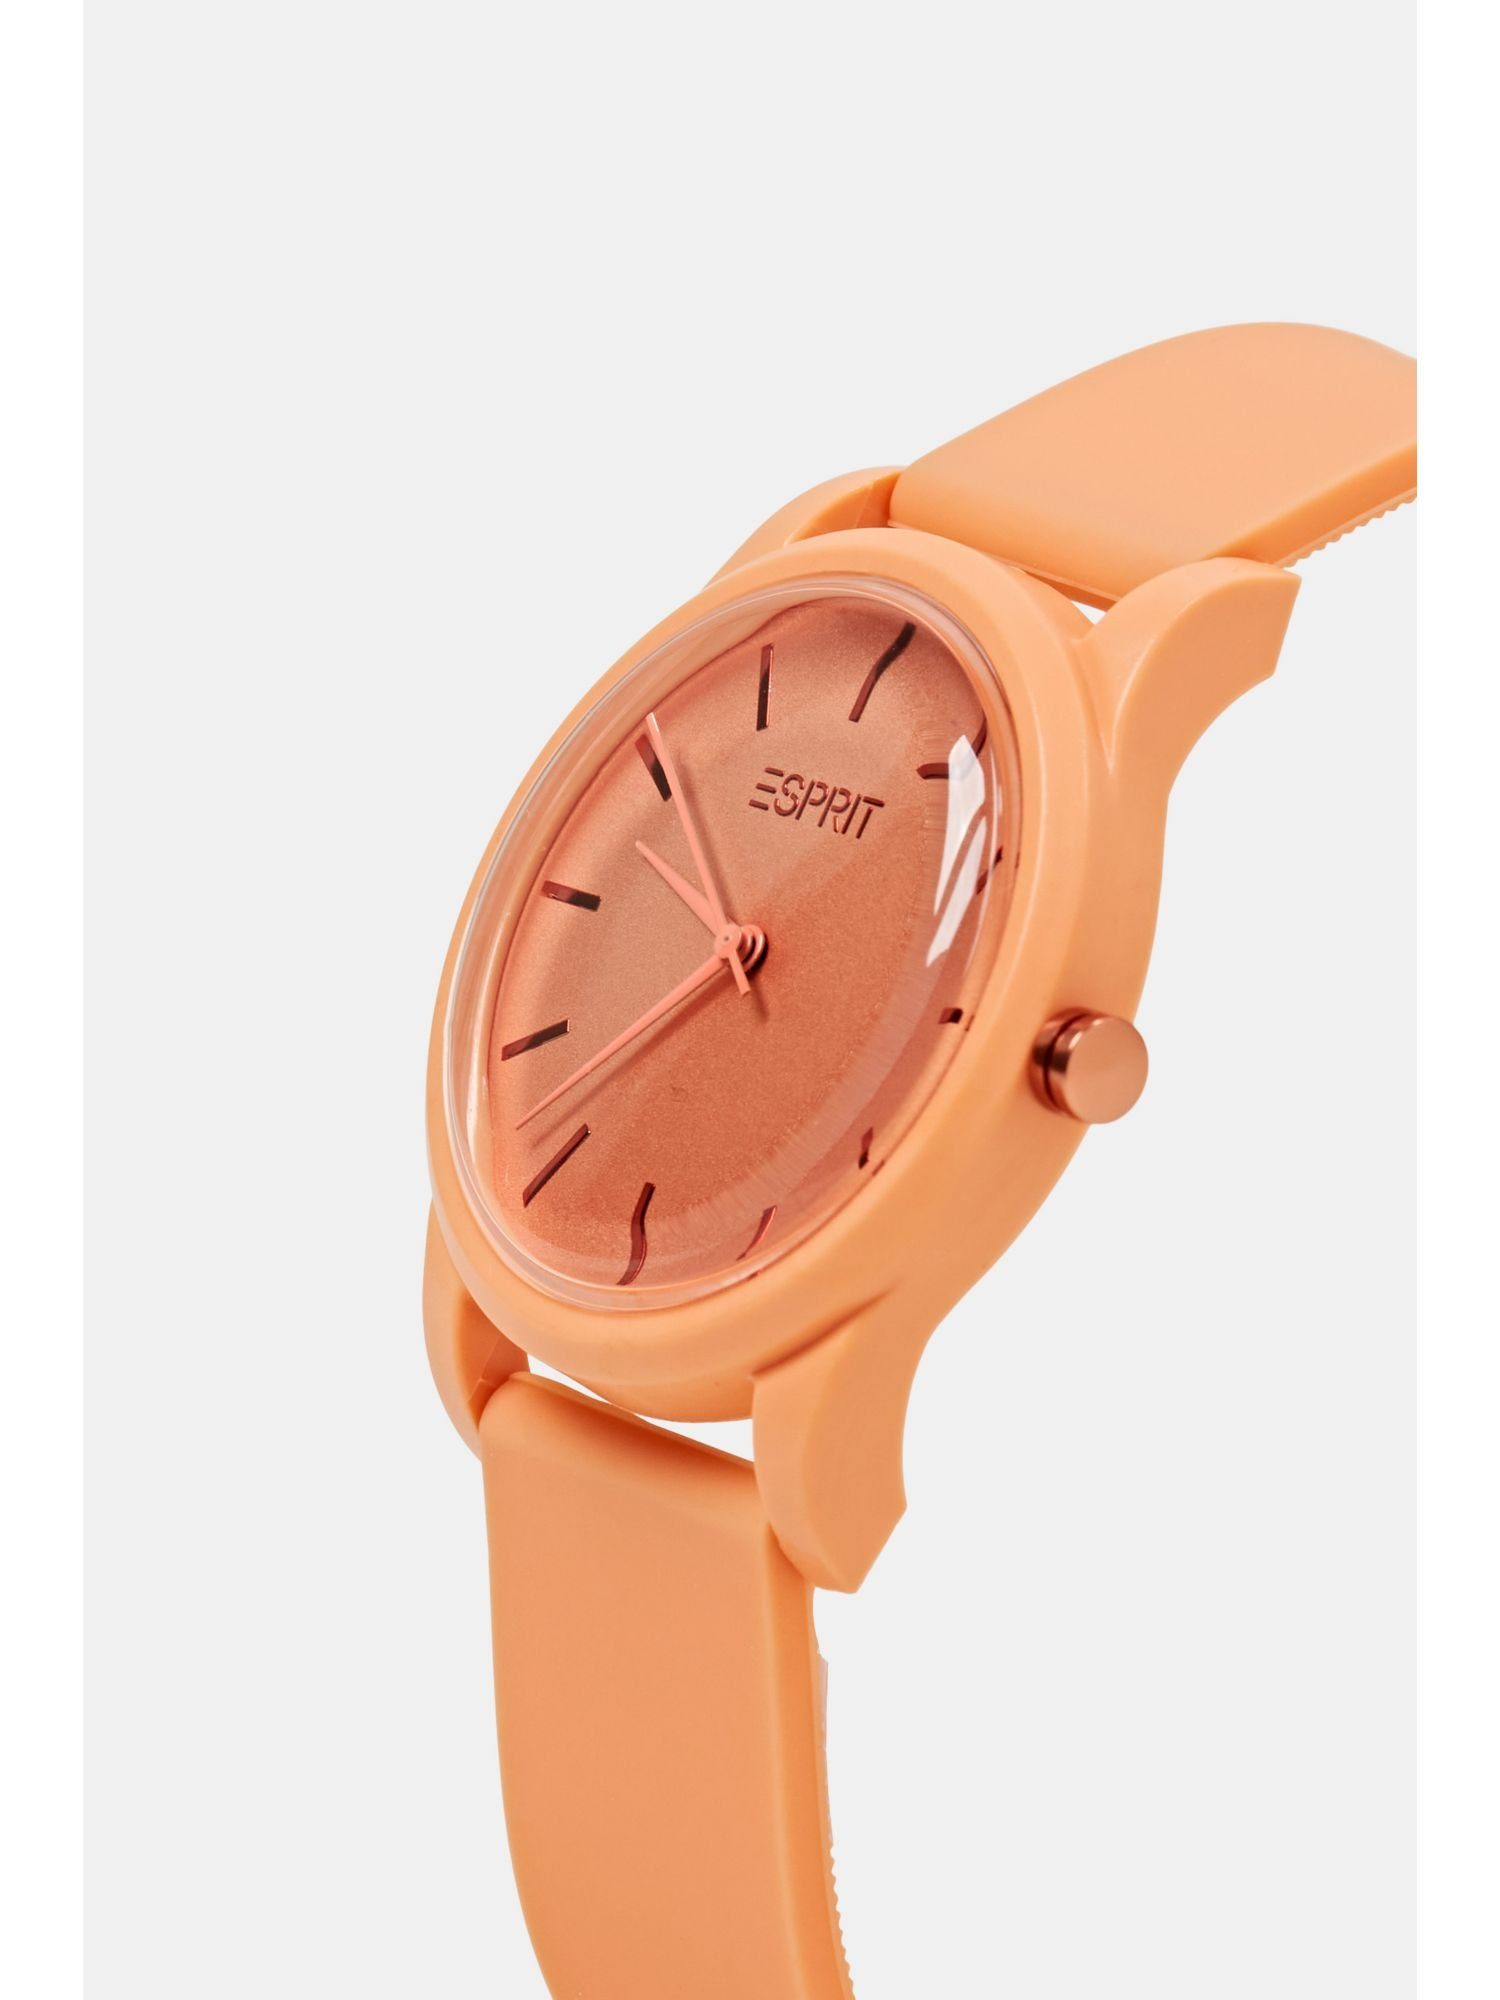 Esprit Quarzuhr Farbige Uhr mit orange Gummiarmband